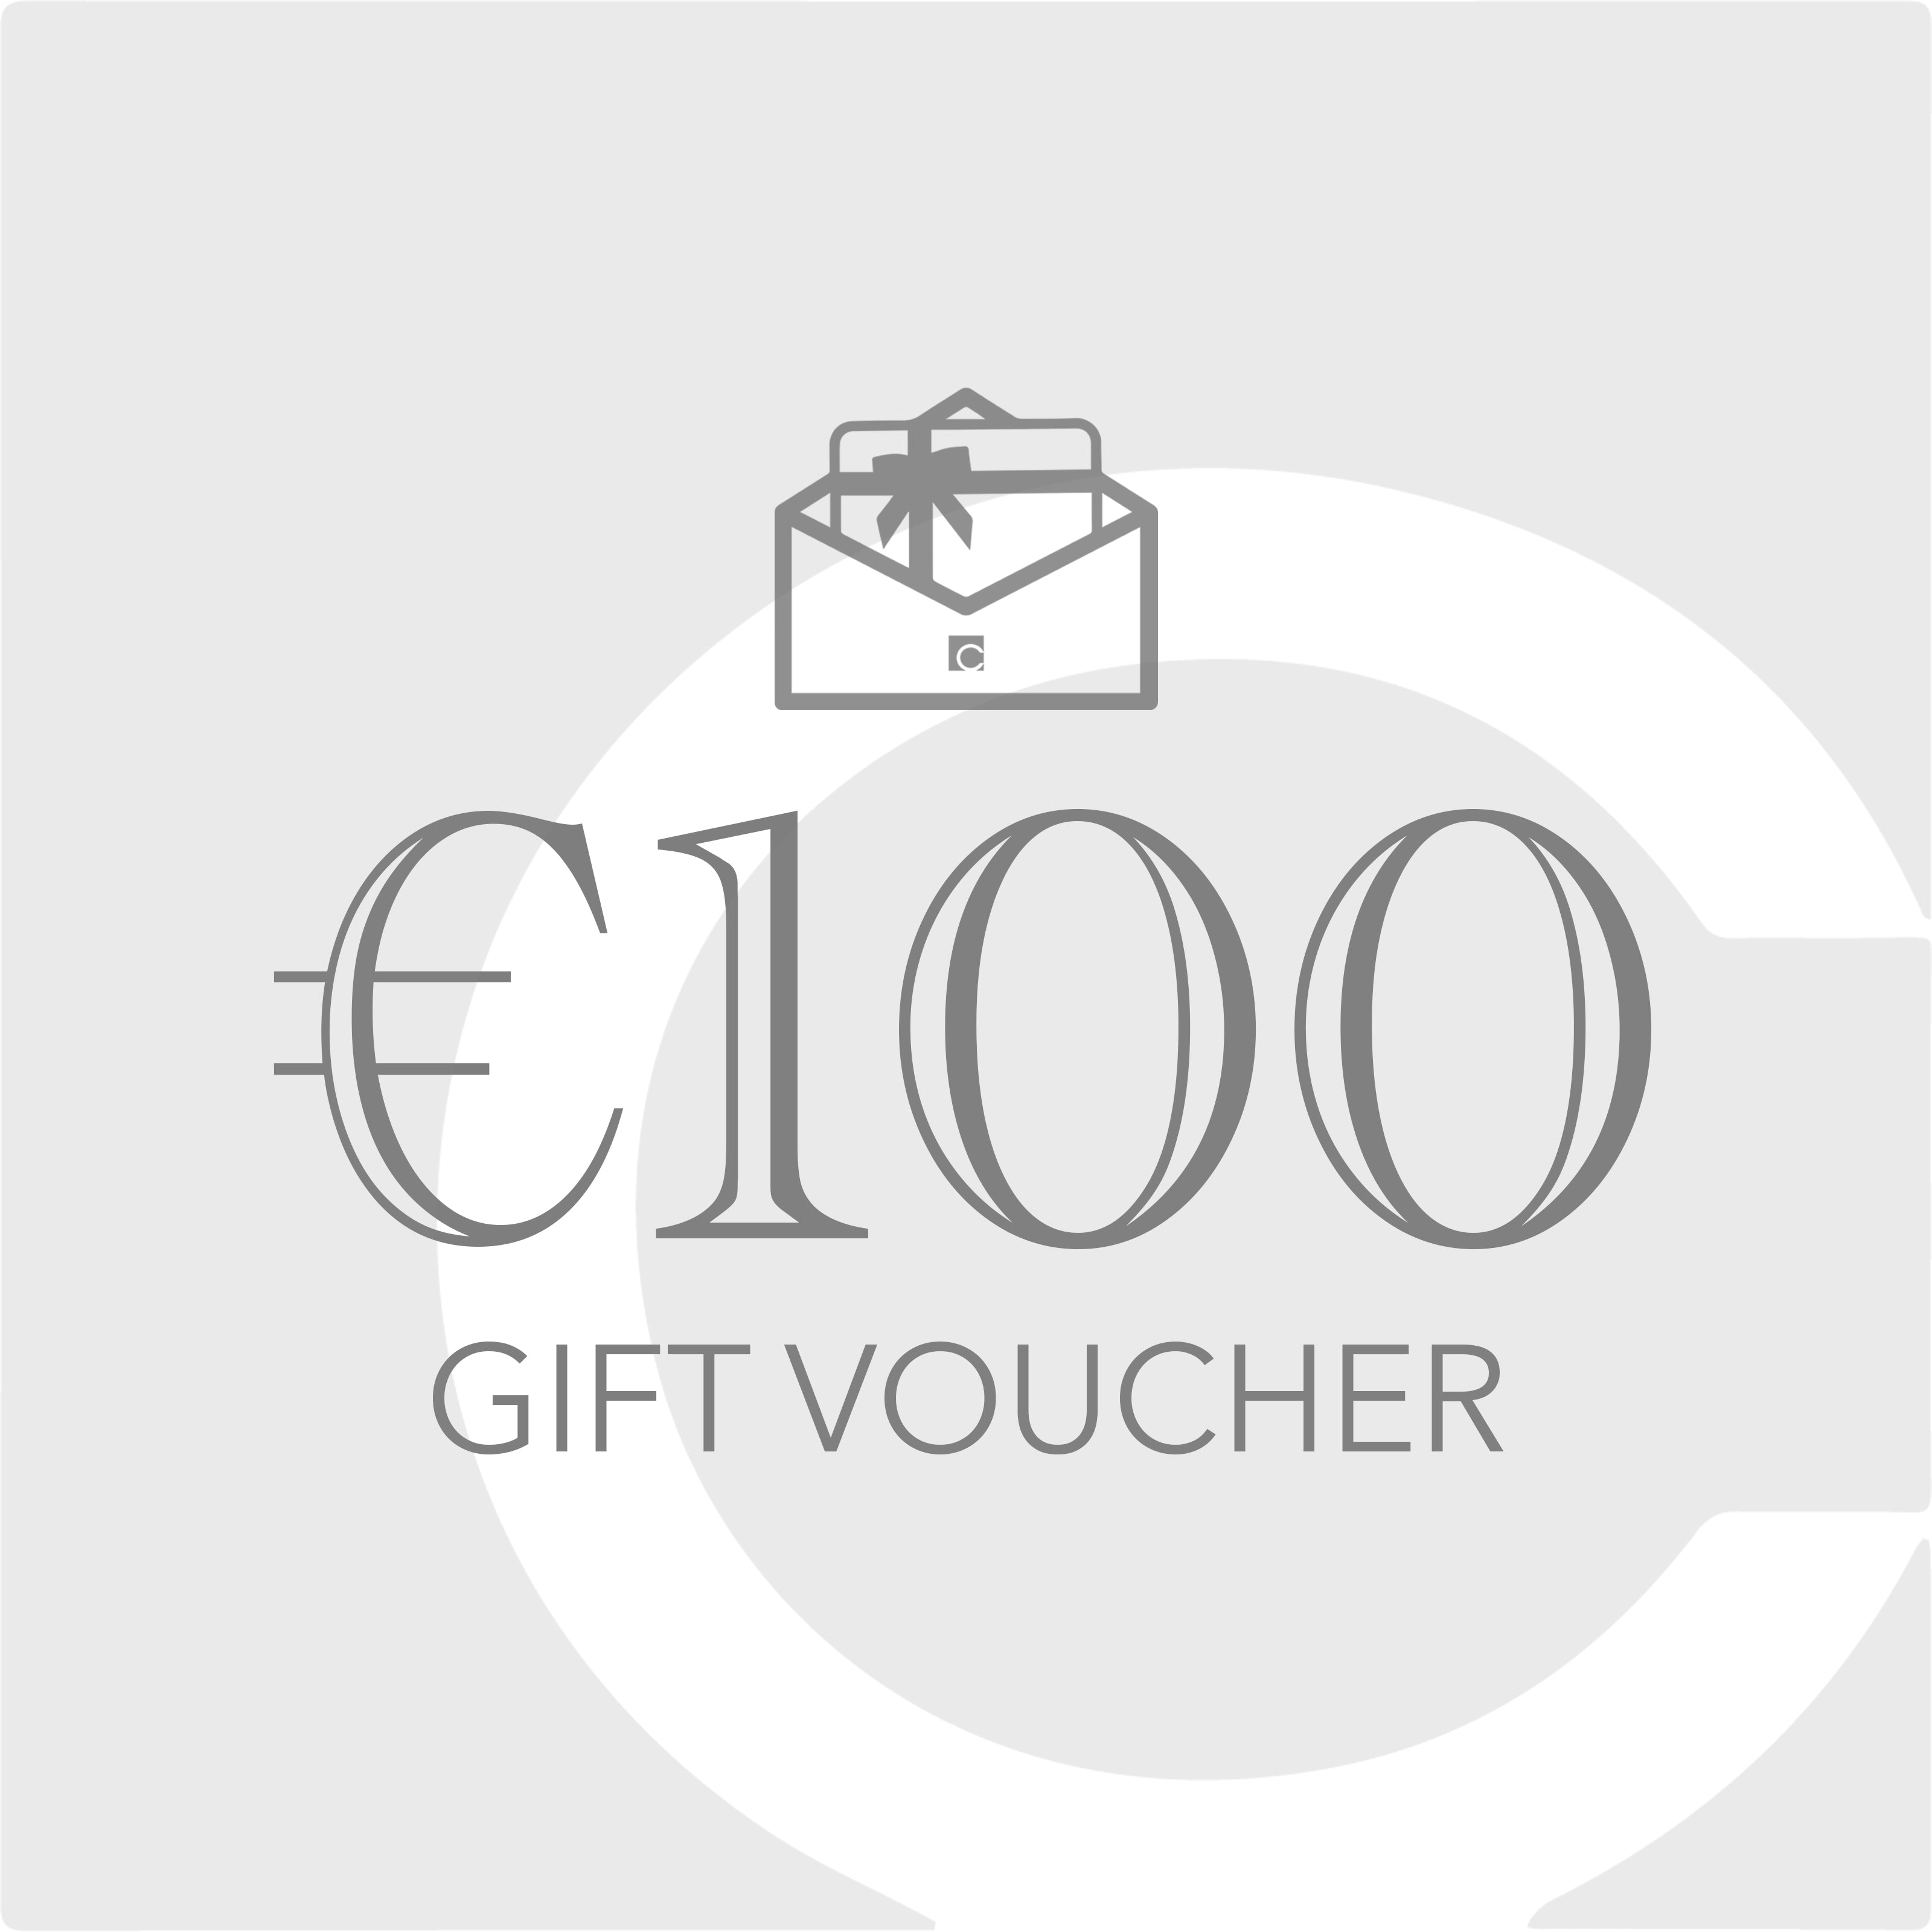 €100 Gift Voucher